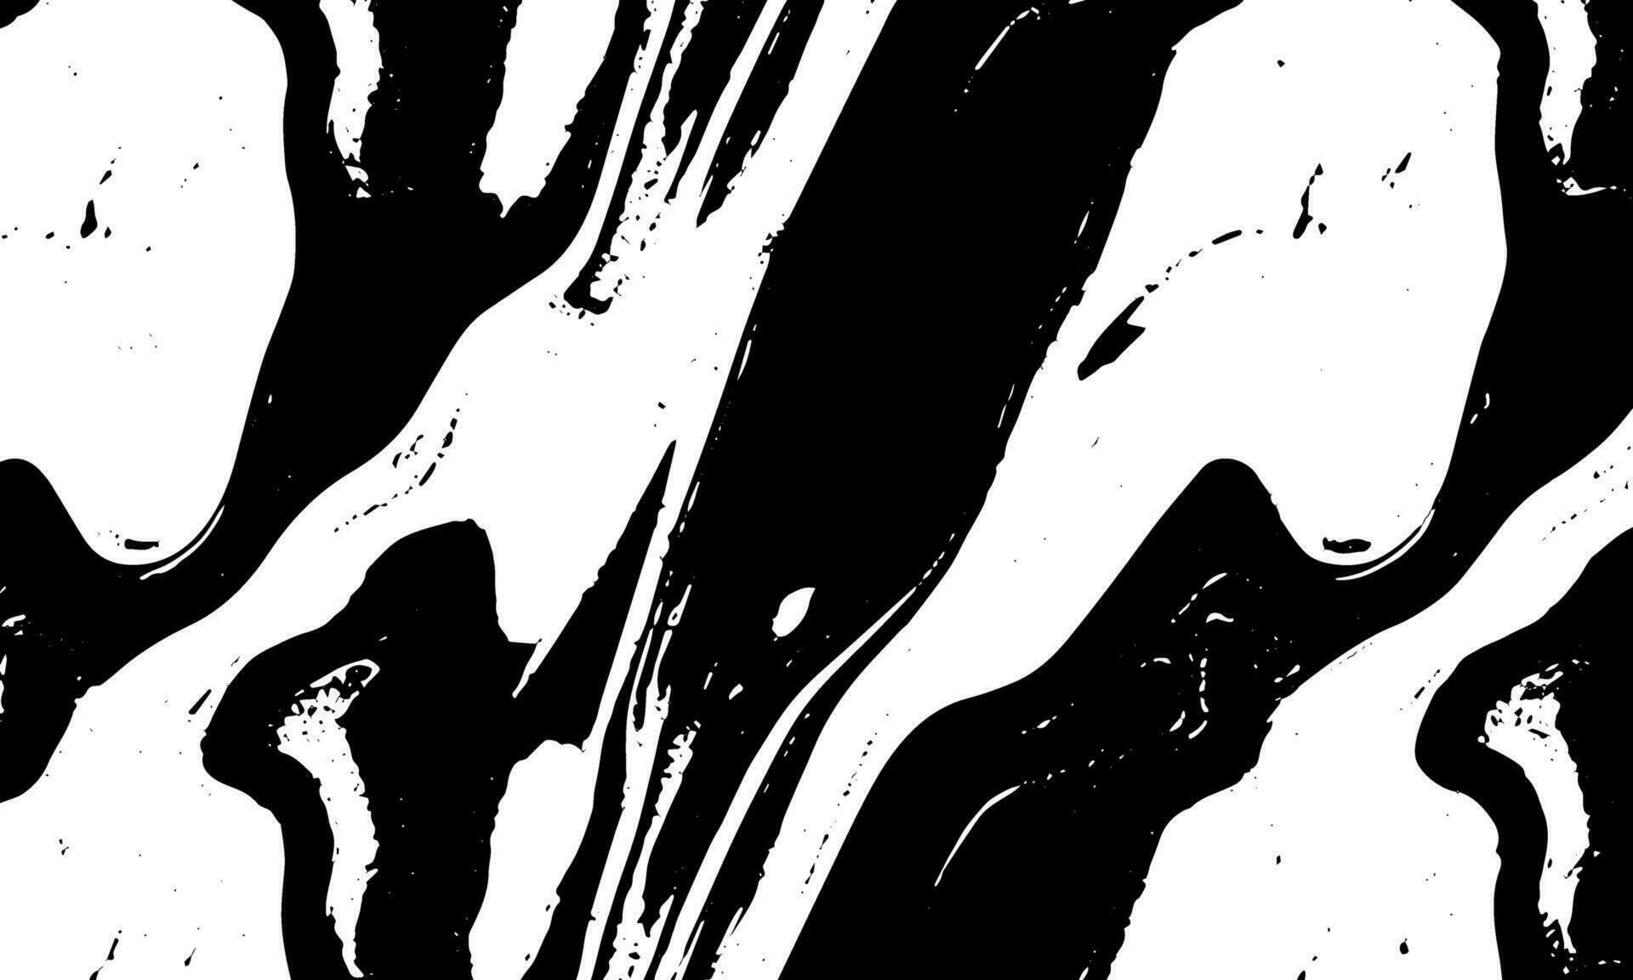 zwart en wit abstract schilderij met een Golf patroon vector